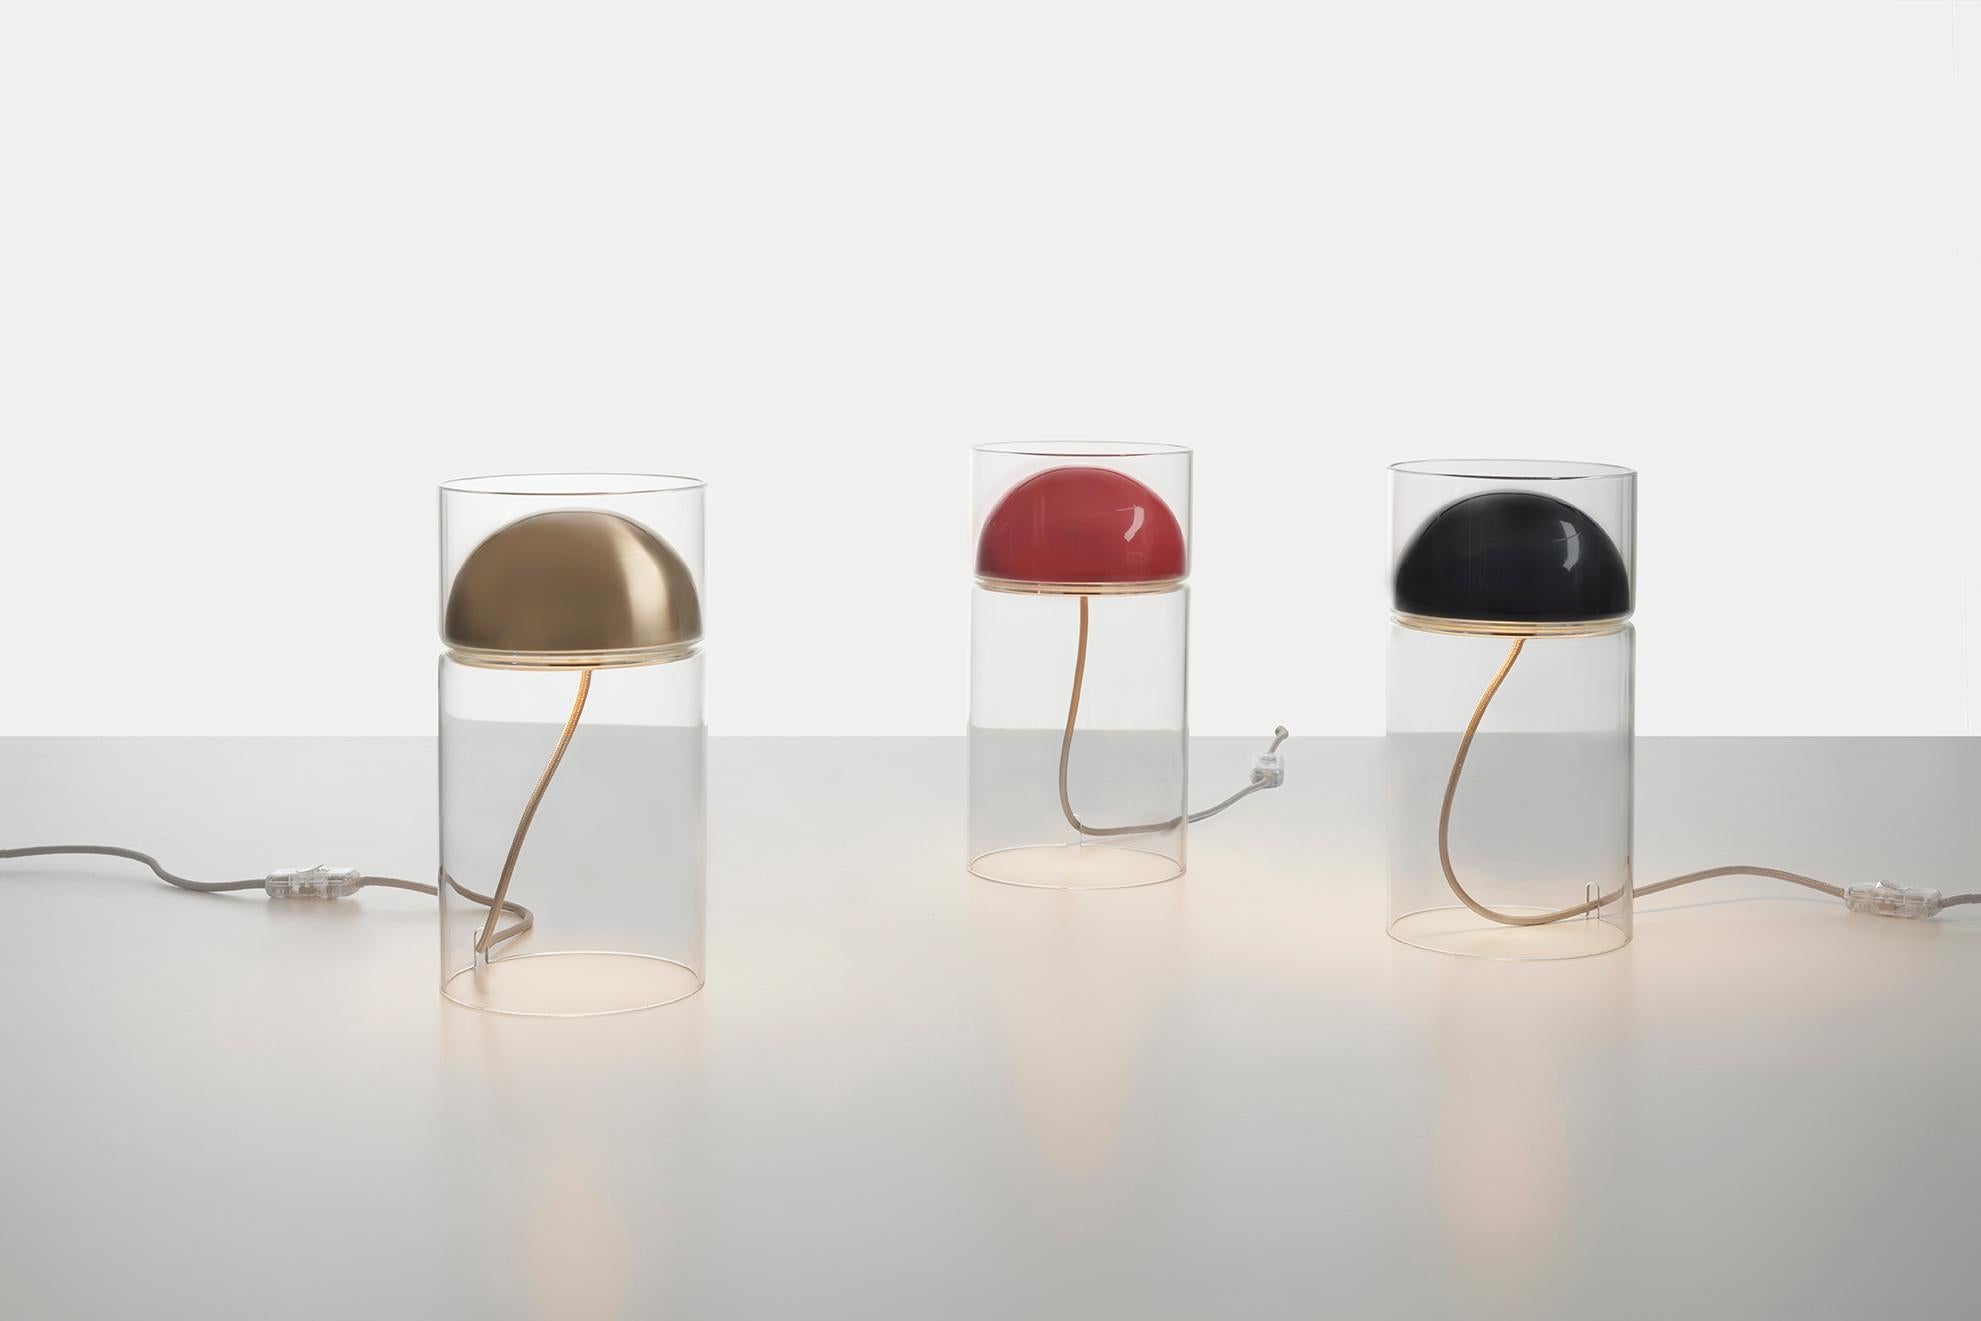 Un minimalisme formel pour une lumière douce et chaleureuse. Medusa est une lampe de table en verre basée sur le principe élémentaire de l'incorporation d'un dôme métallique dans un cylindre : le dôme contient la source lumineuse et le cylindre de